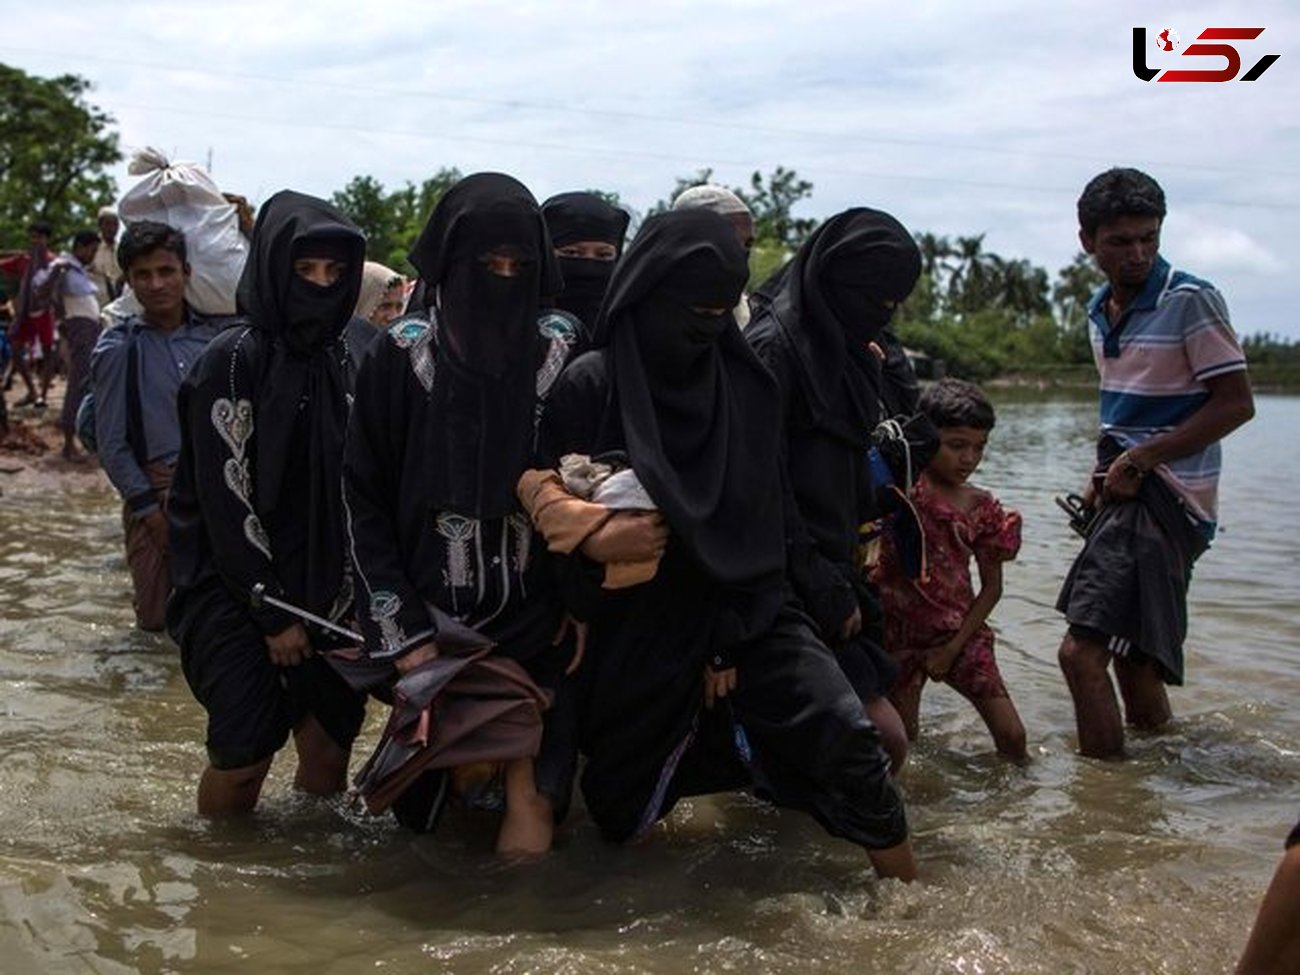 بنگلادش از کشته شدن ۳۰۰۰ مسلمان میانماری در دو هفته گذشته خبر داد